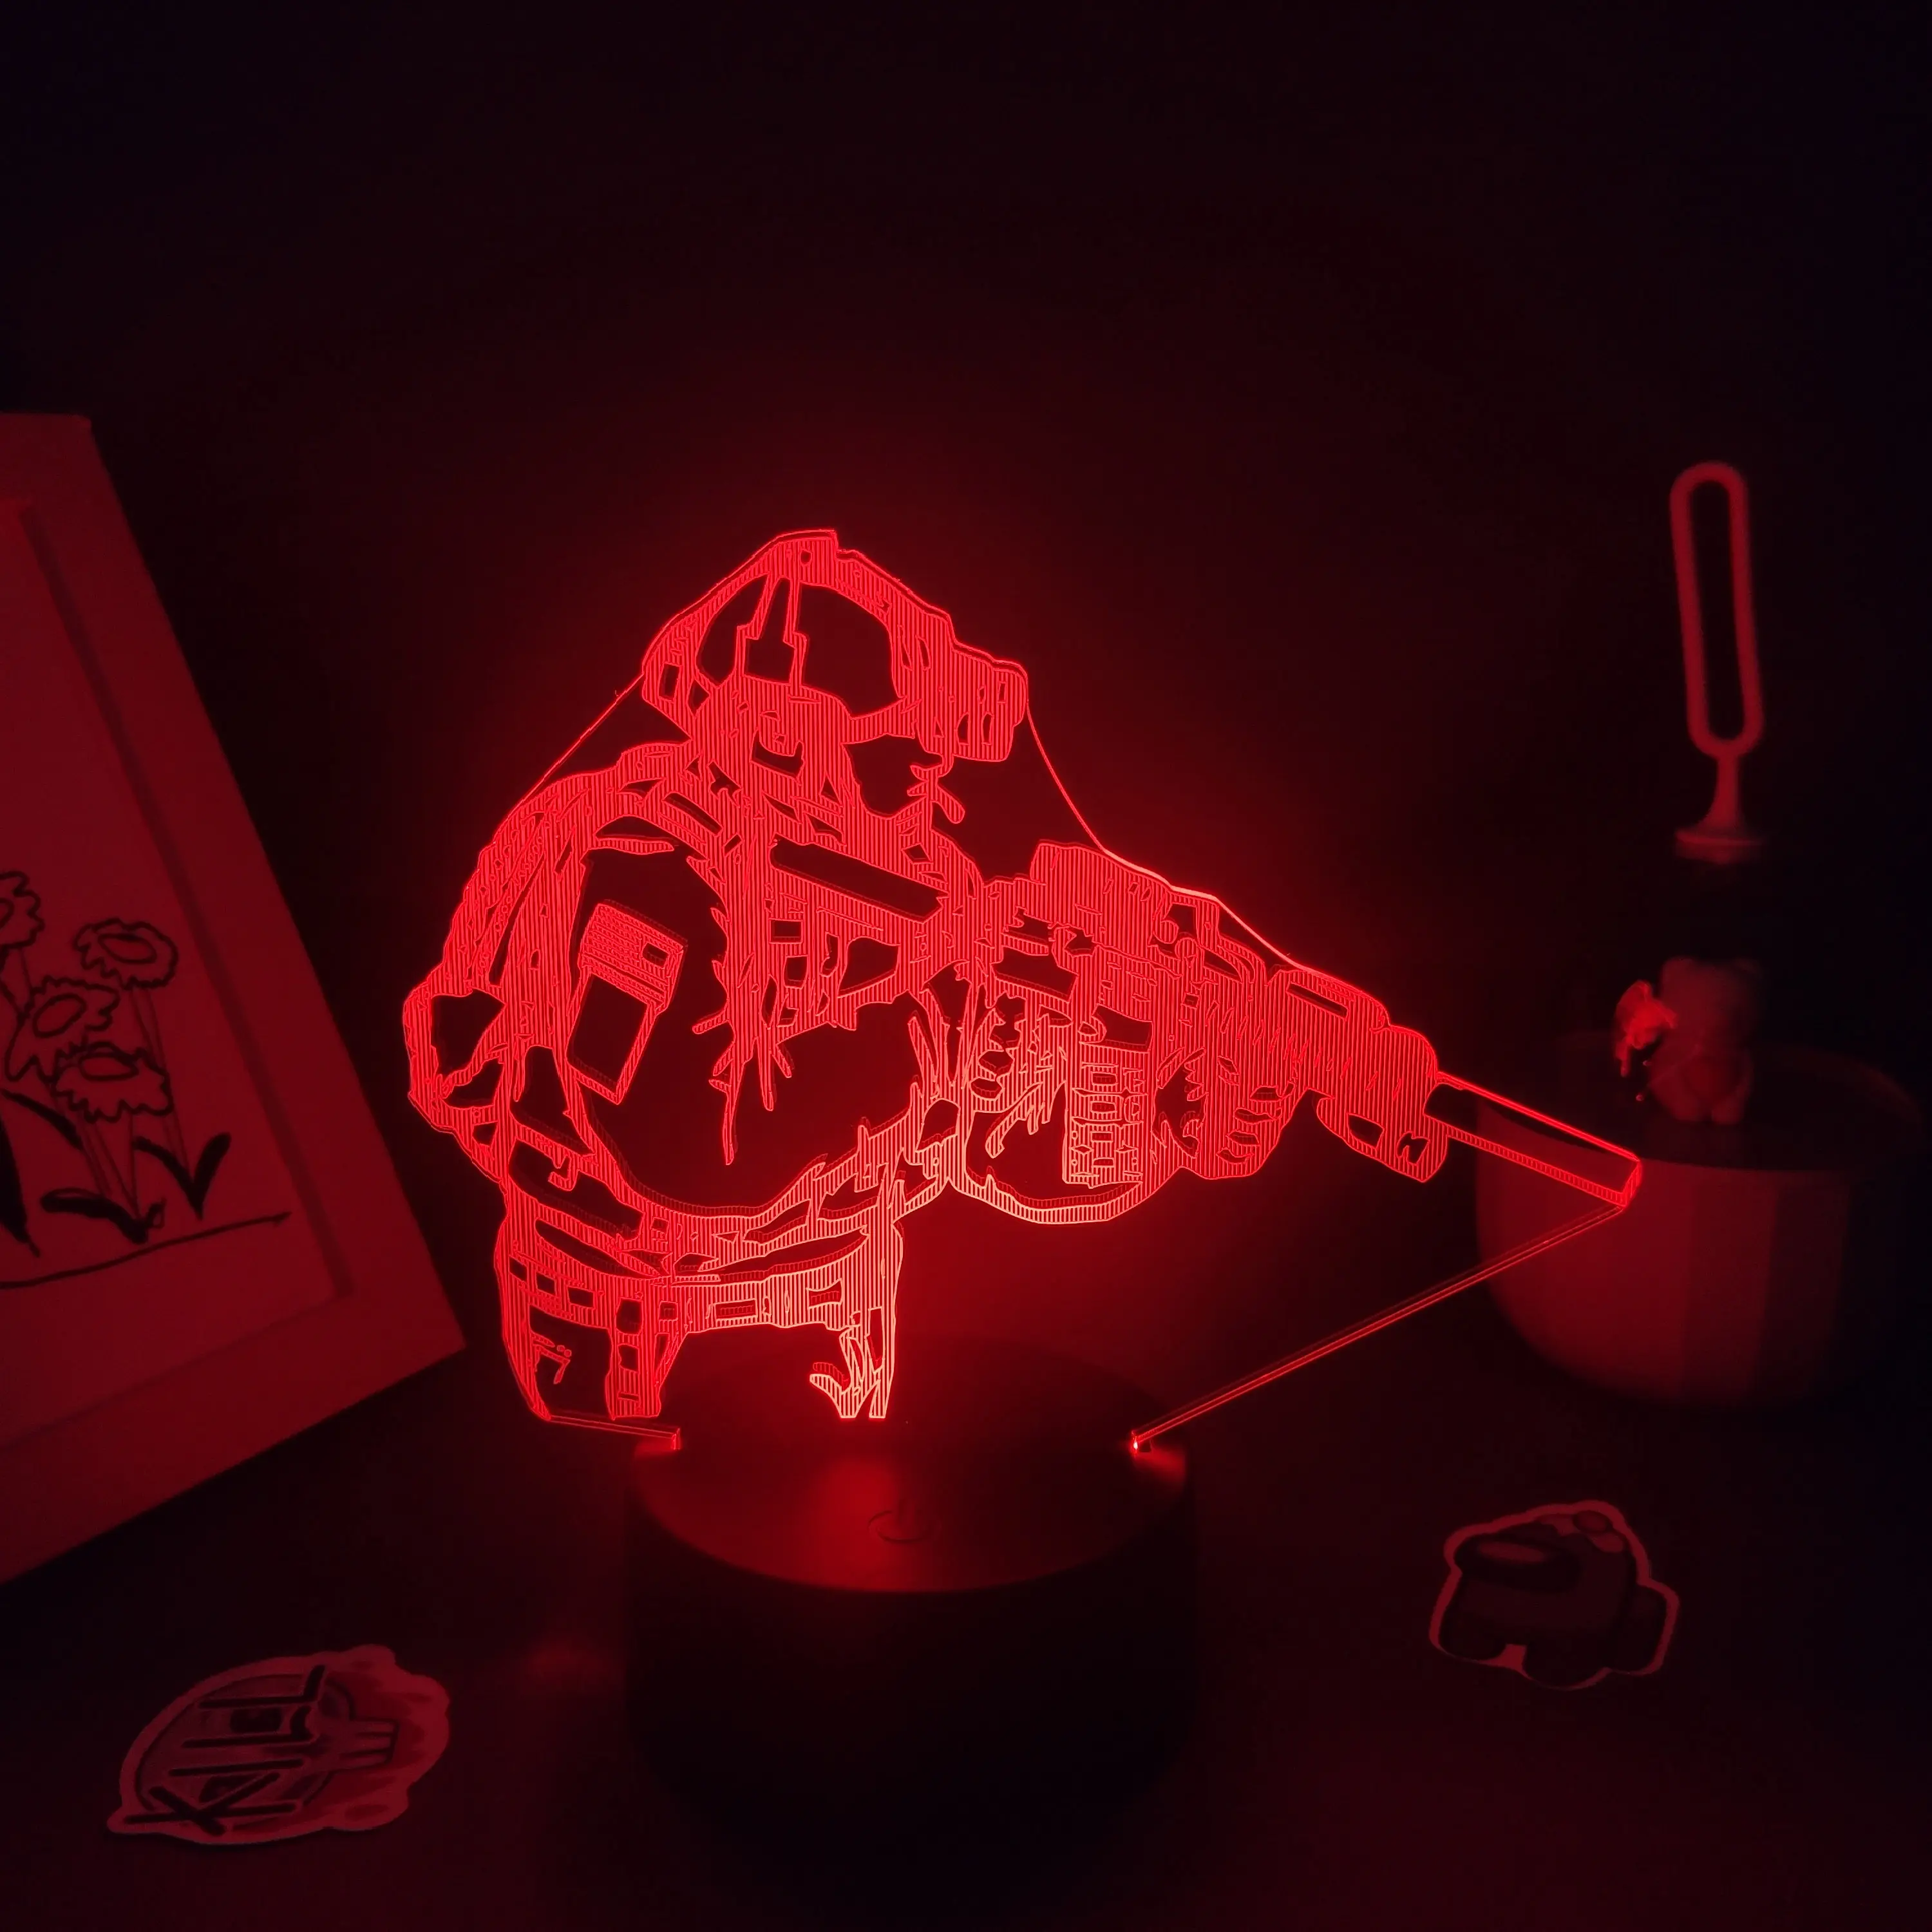 CS GO Counter-Strike Spiel figur 3D-Lampen Leds Neon RGB Nachtlichter Geburtstags geschenke Schlafzimmer Nachttisch Bunte Dekoration